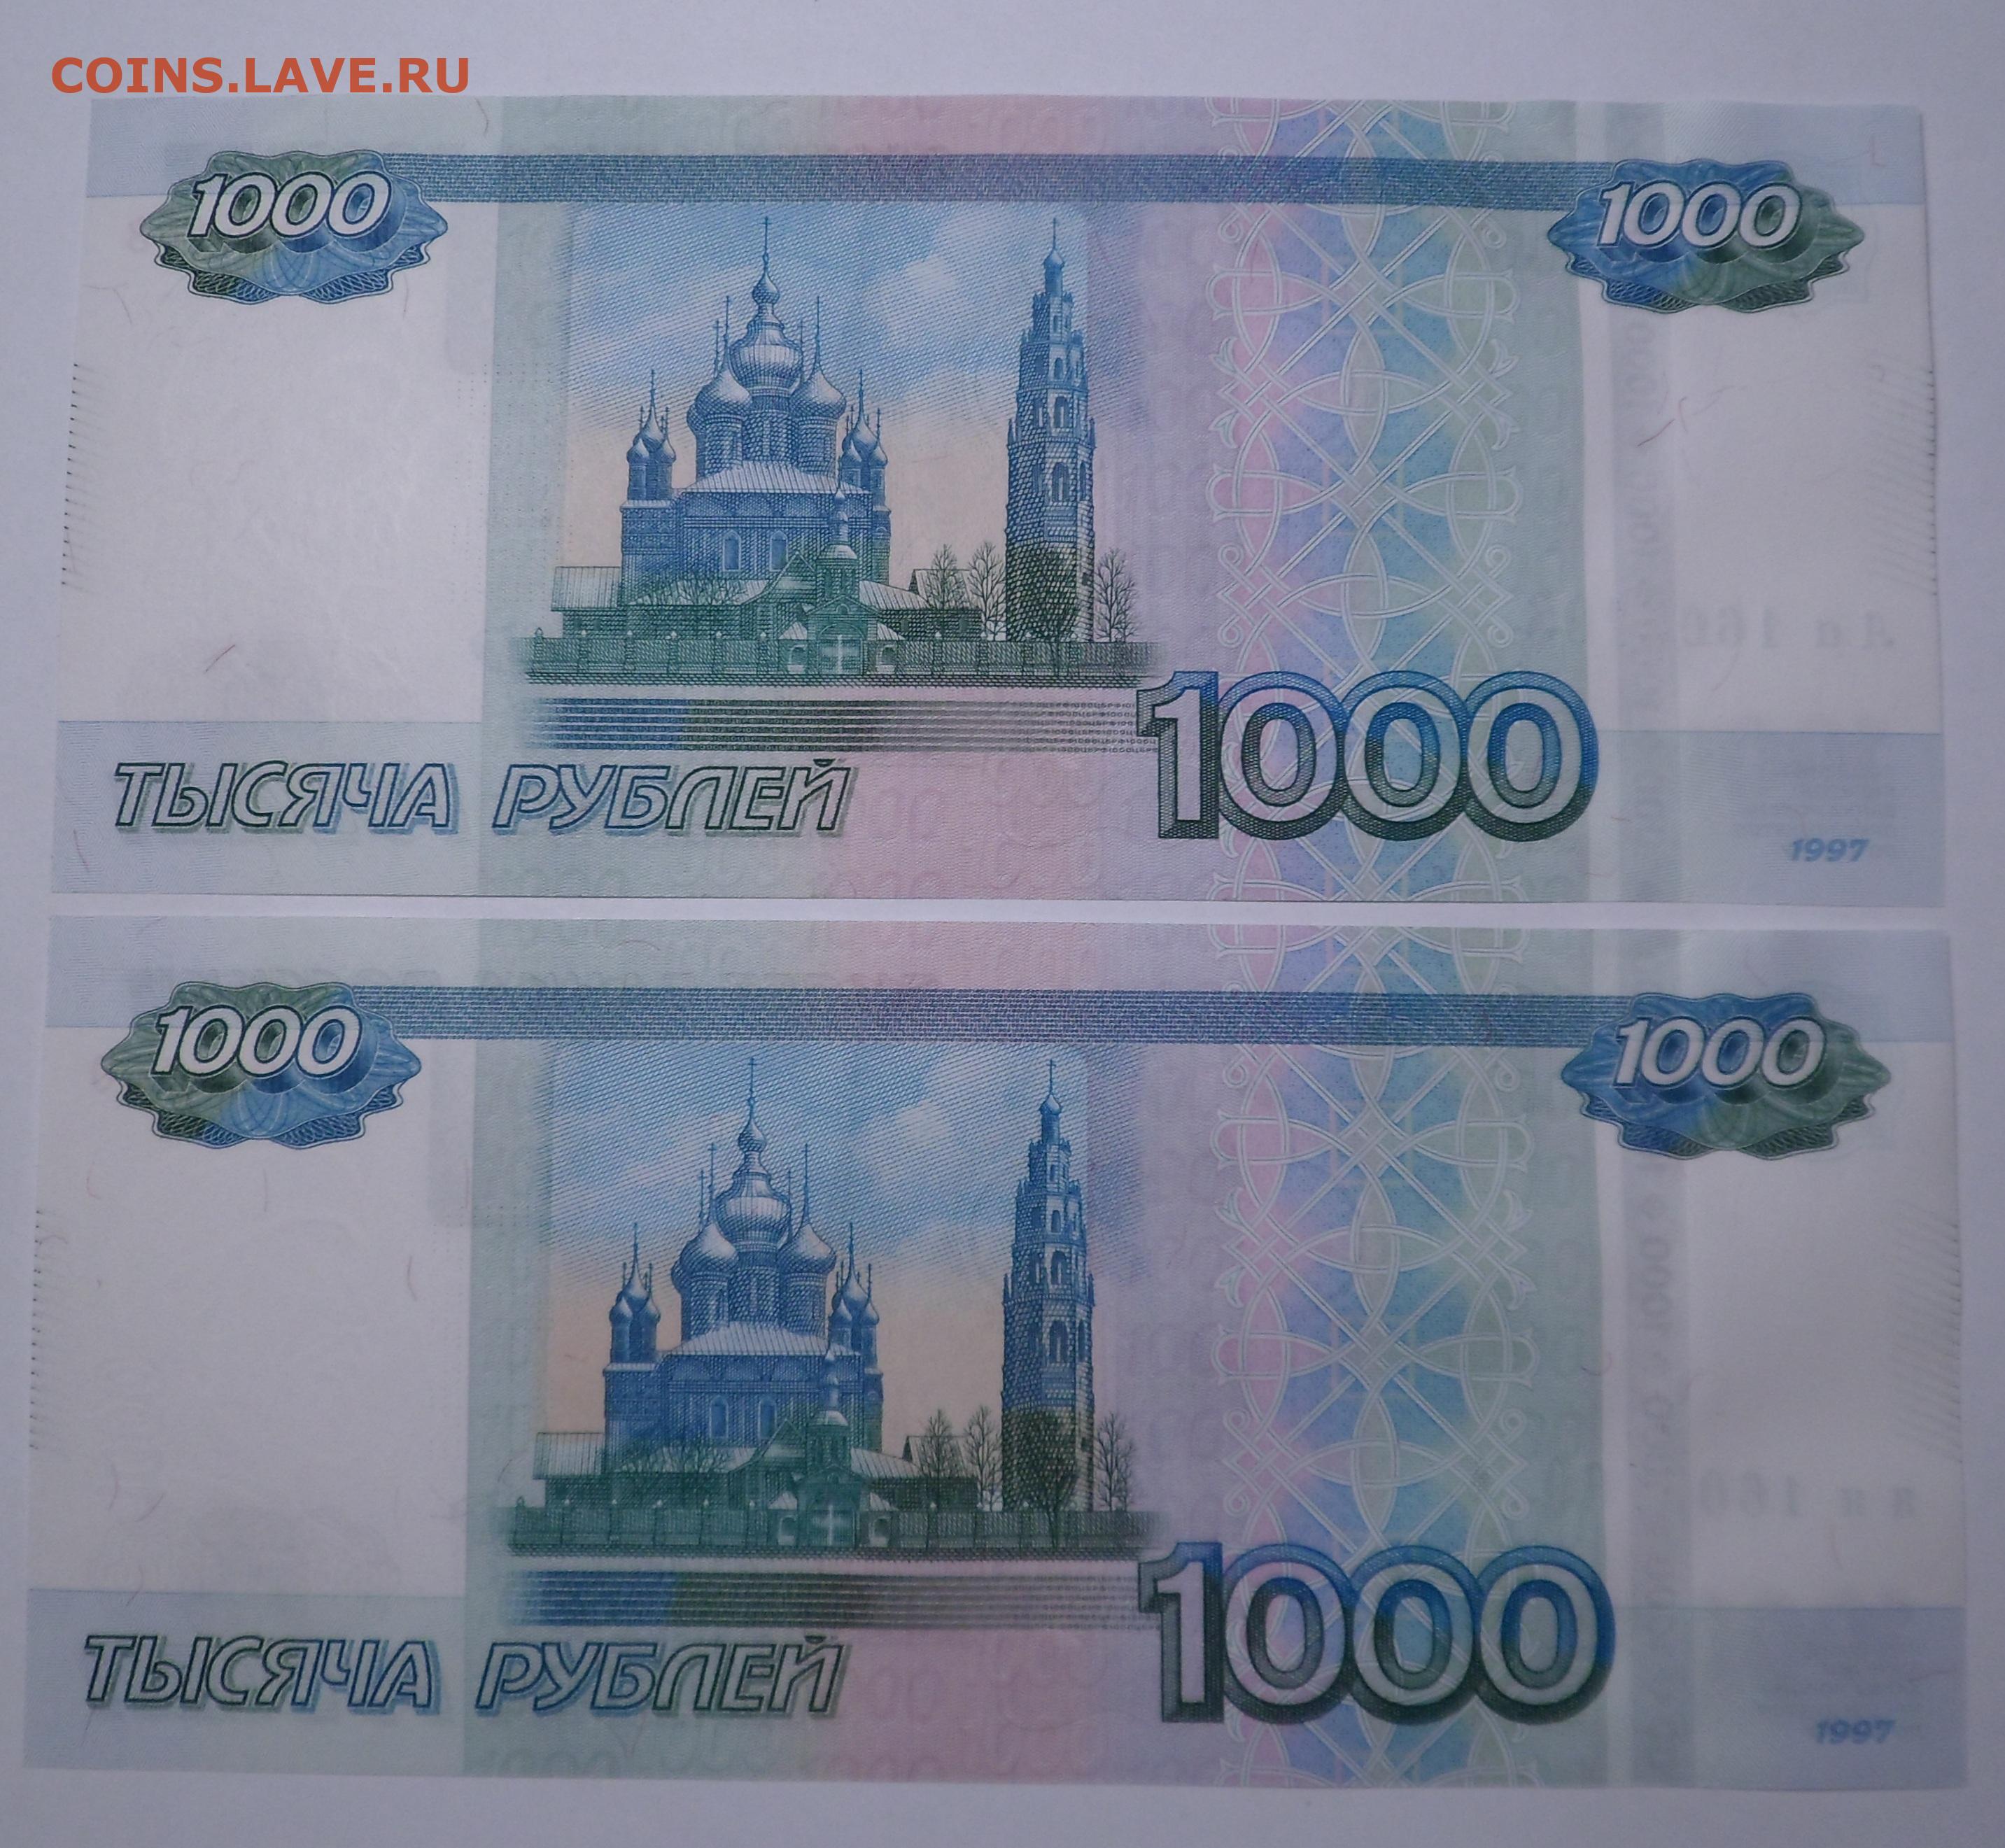 1000 рублей 2010. 1000 Рублей АА. 1000 Рублей до 2010. 1000 Рублей 2010 года.